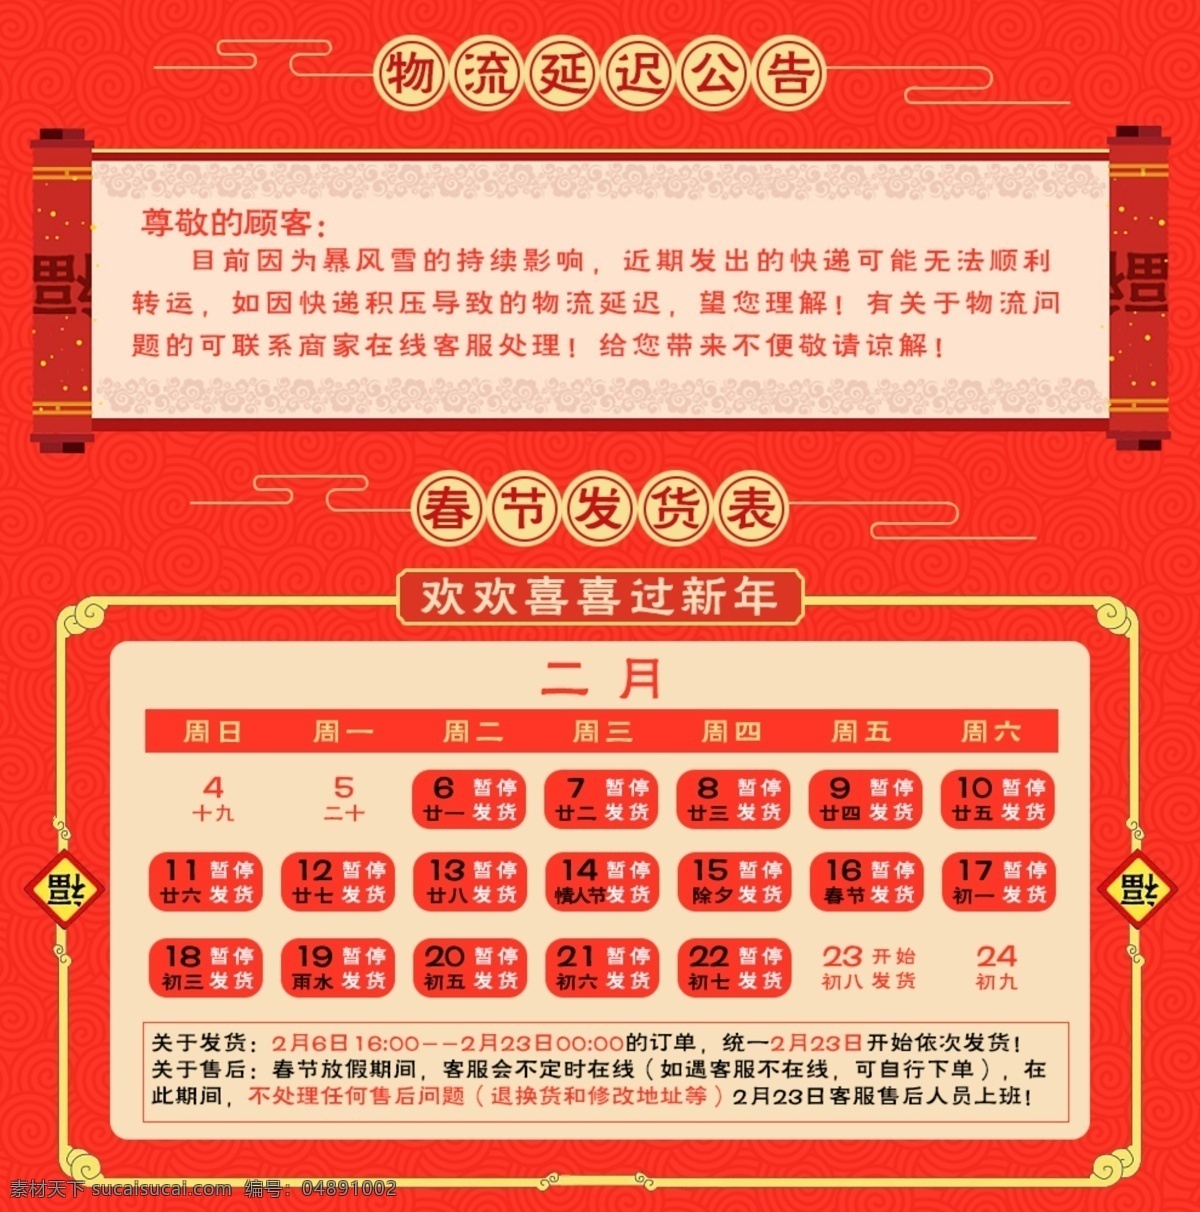 天猫 淘宝 京东 春节 放假 公告 海报 延迟发货 红色背景 福字 春节放假 新年